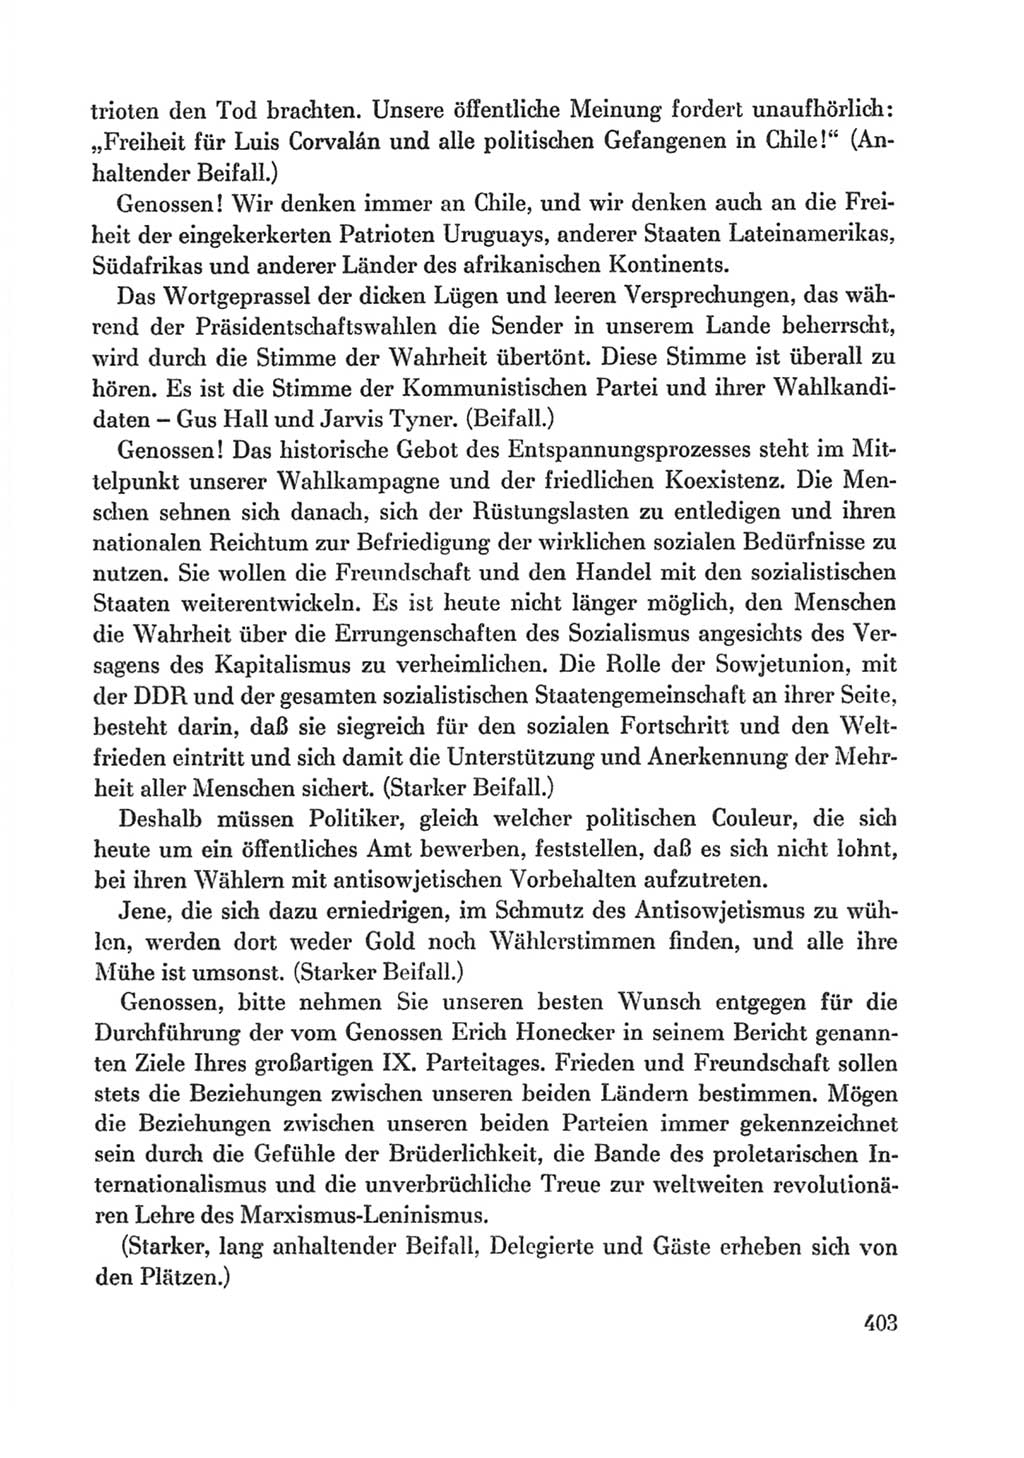 Protokoll der Verhandlungen des Ⅸ. Parteitages der Sozialistischen Einheitspartei Deutschlands (SED) [Deutsche Demokratische Republik (DDR)] 1976, Band 1, Seite 403 (Prot. Verh. Ⅸ. PT SED DDR 1976, Bd. 1, S. 403)